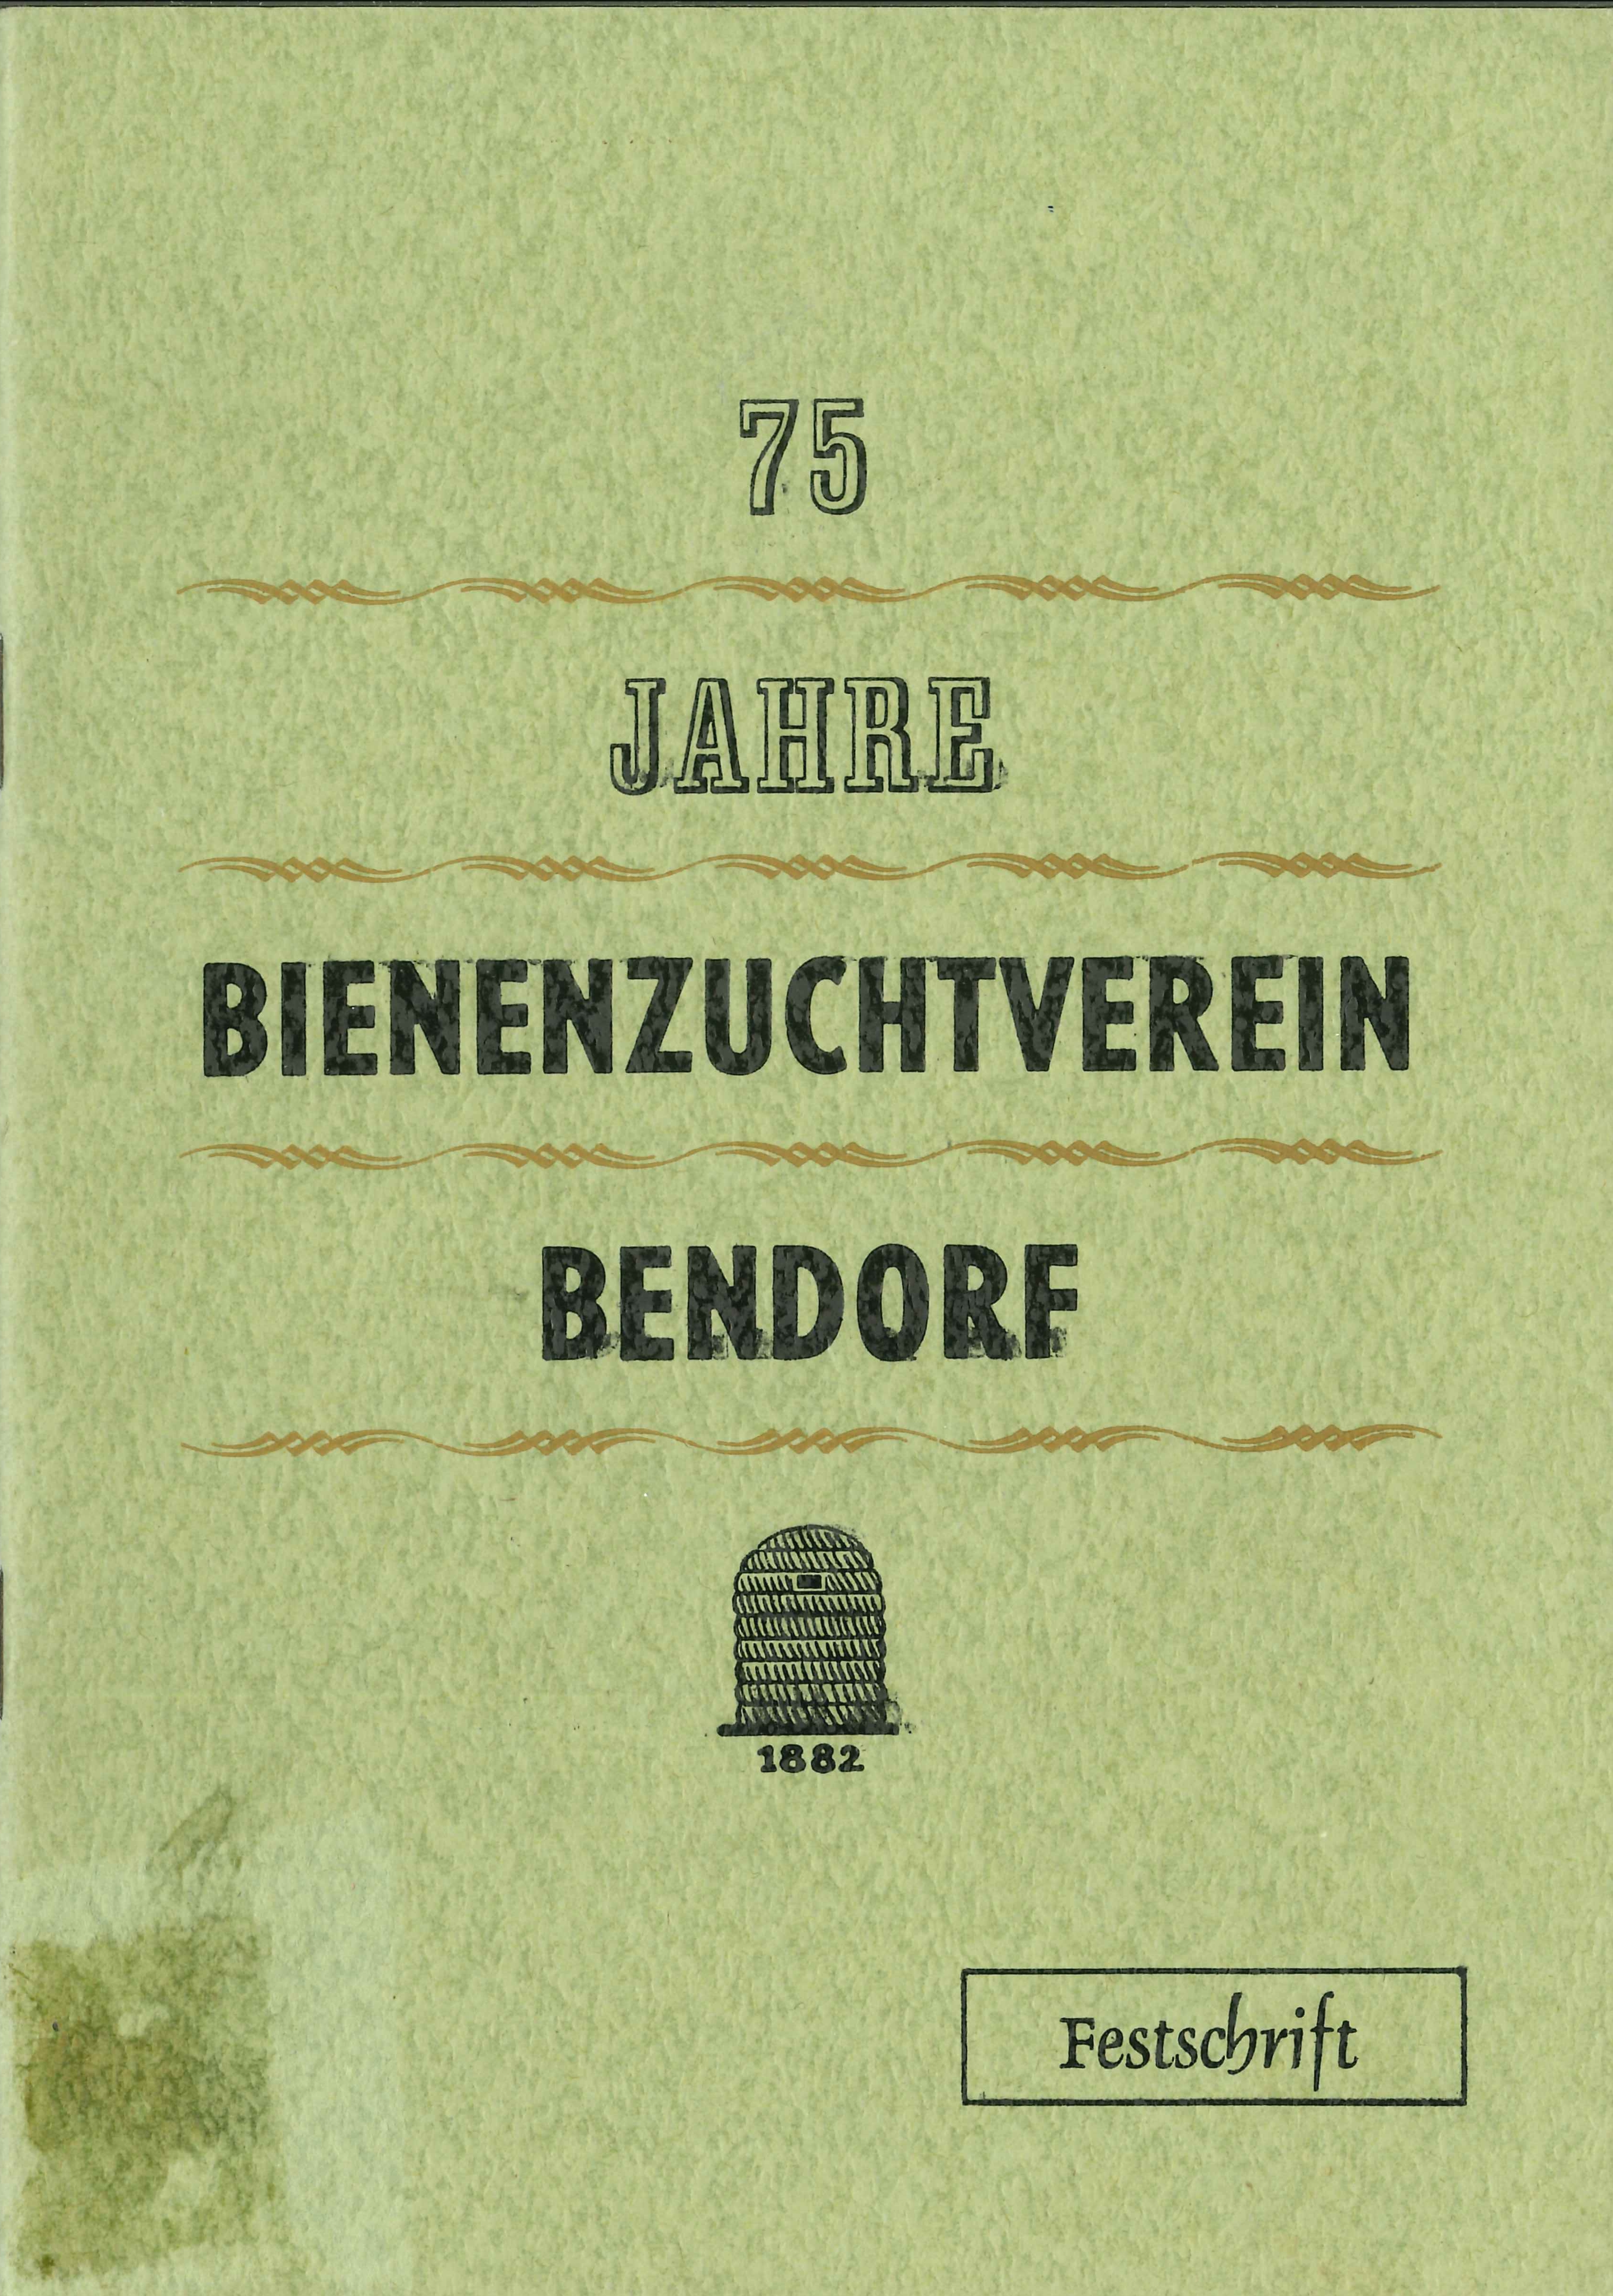 Festschrift Bienenzuchverein 1957 (Rheinisches Eisenkunstguss-Museum CC BY-NC-SA)